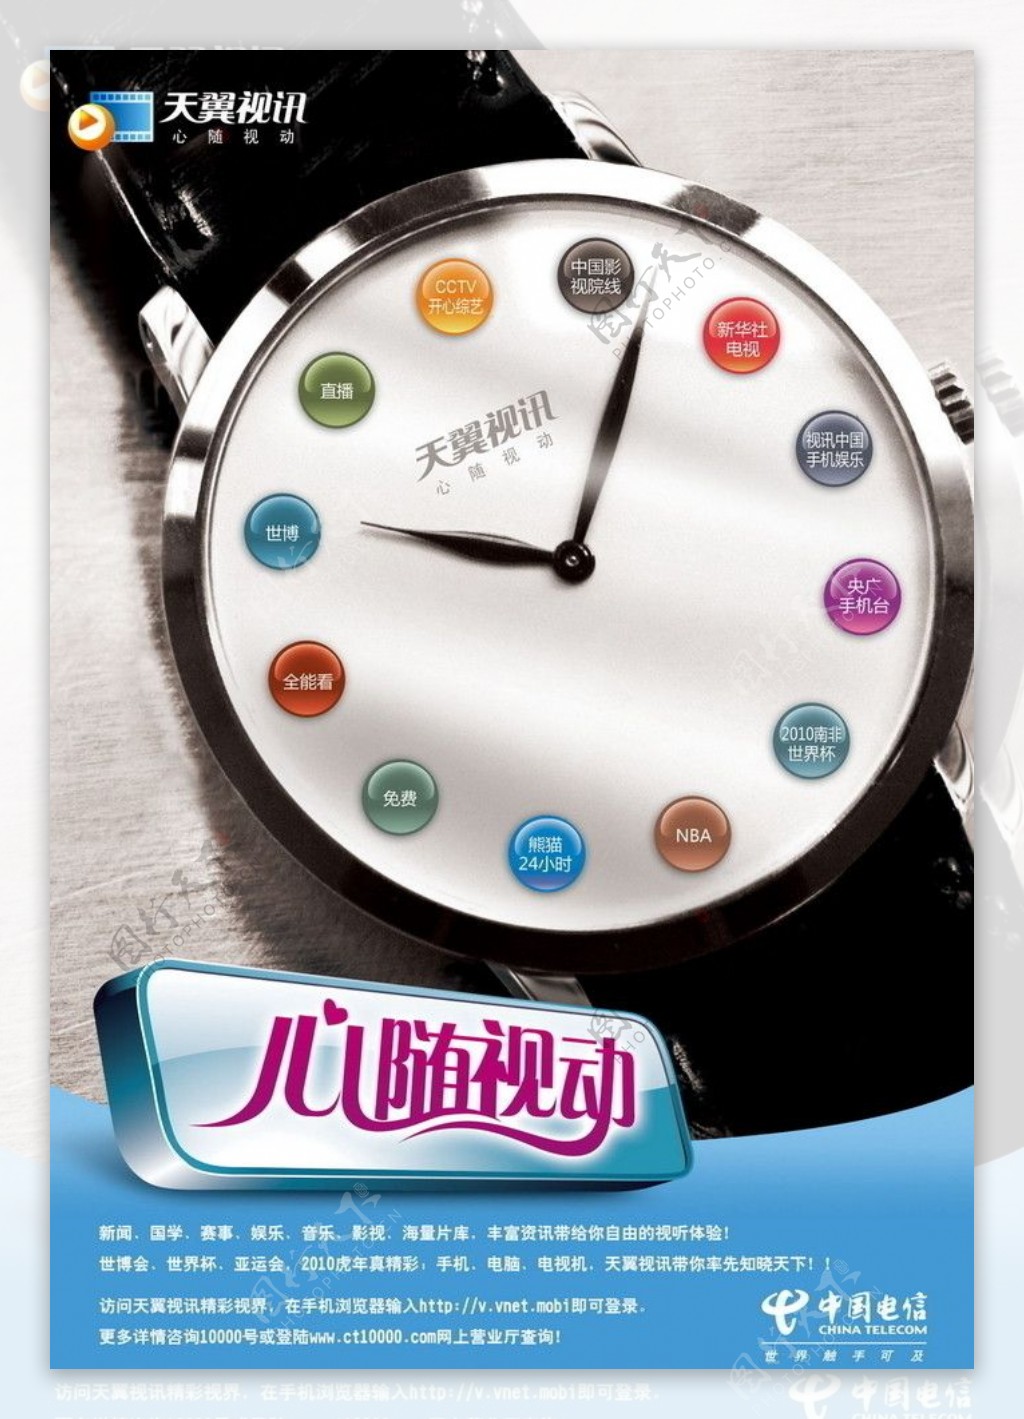 中国电信天翼3G互联网手机天翼视讯海报图片